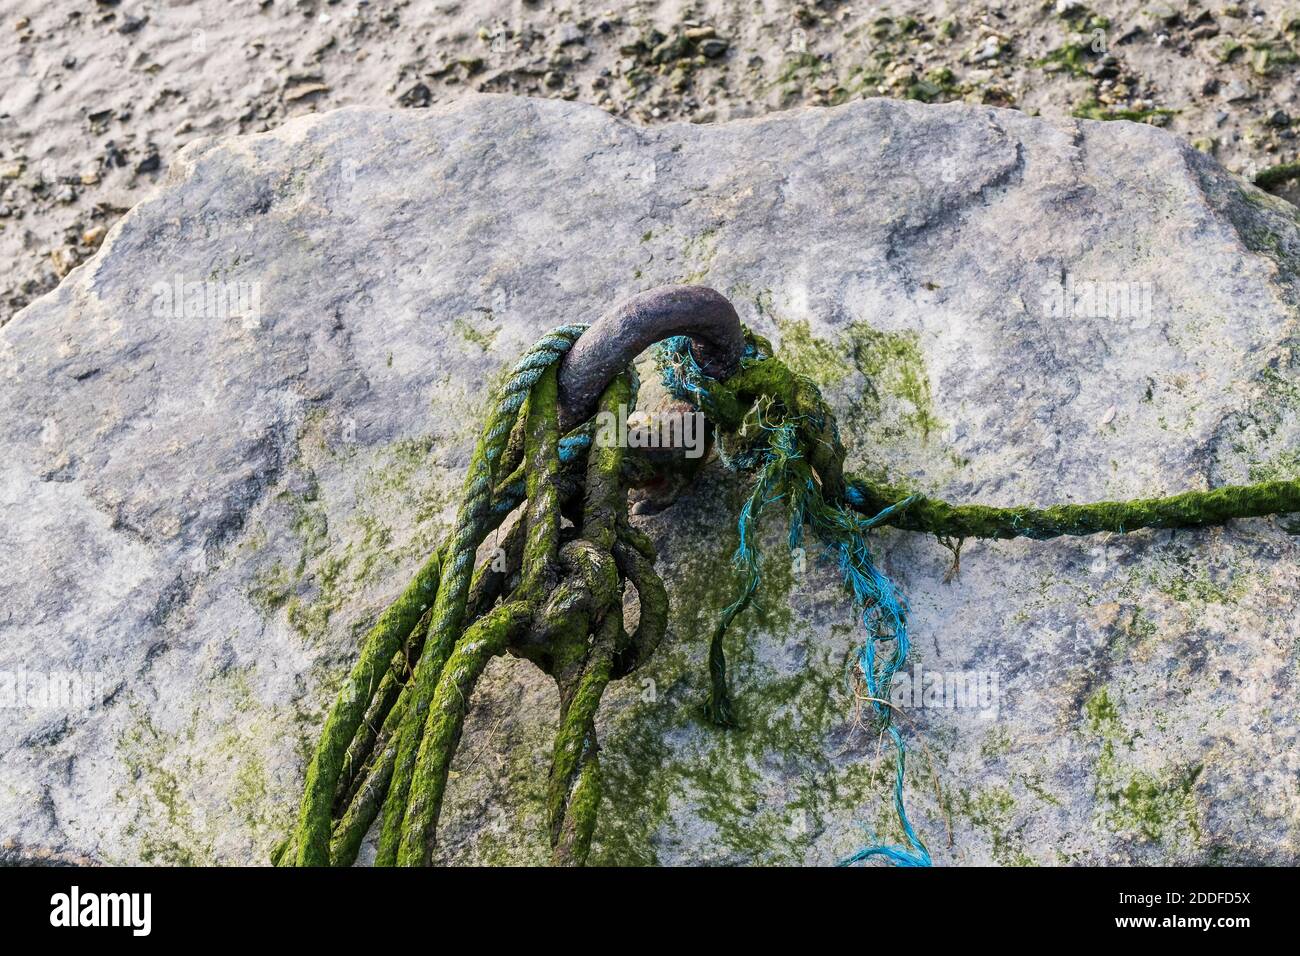 Algenbedecktes Seil durchgeschlungen durch eine rostige Metallöse, die an einem großen Felsen befestigt ist. Stockfoto